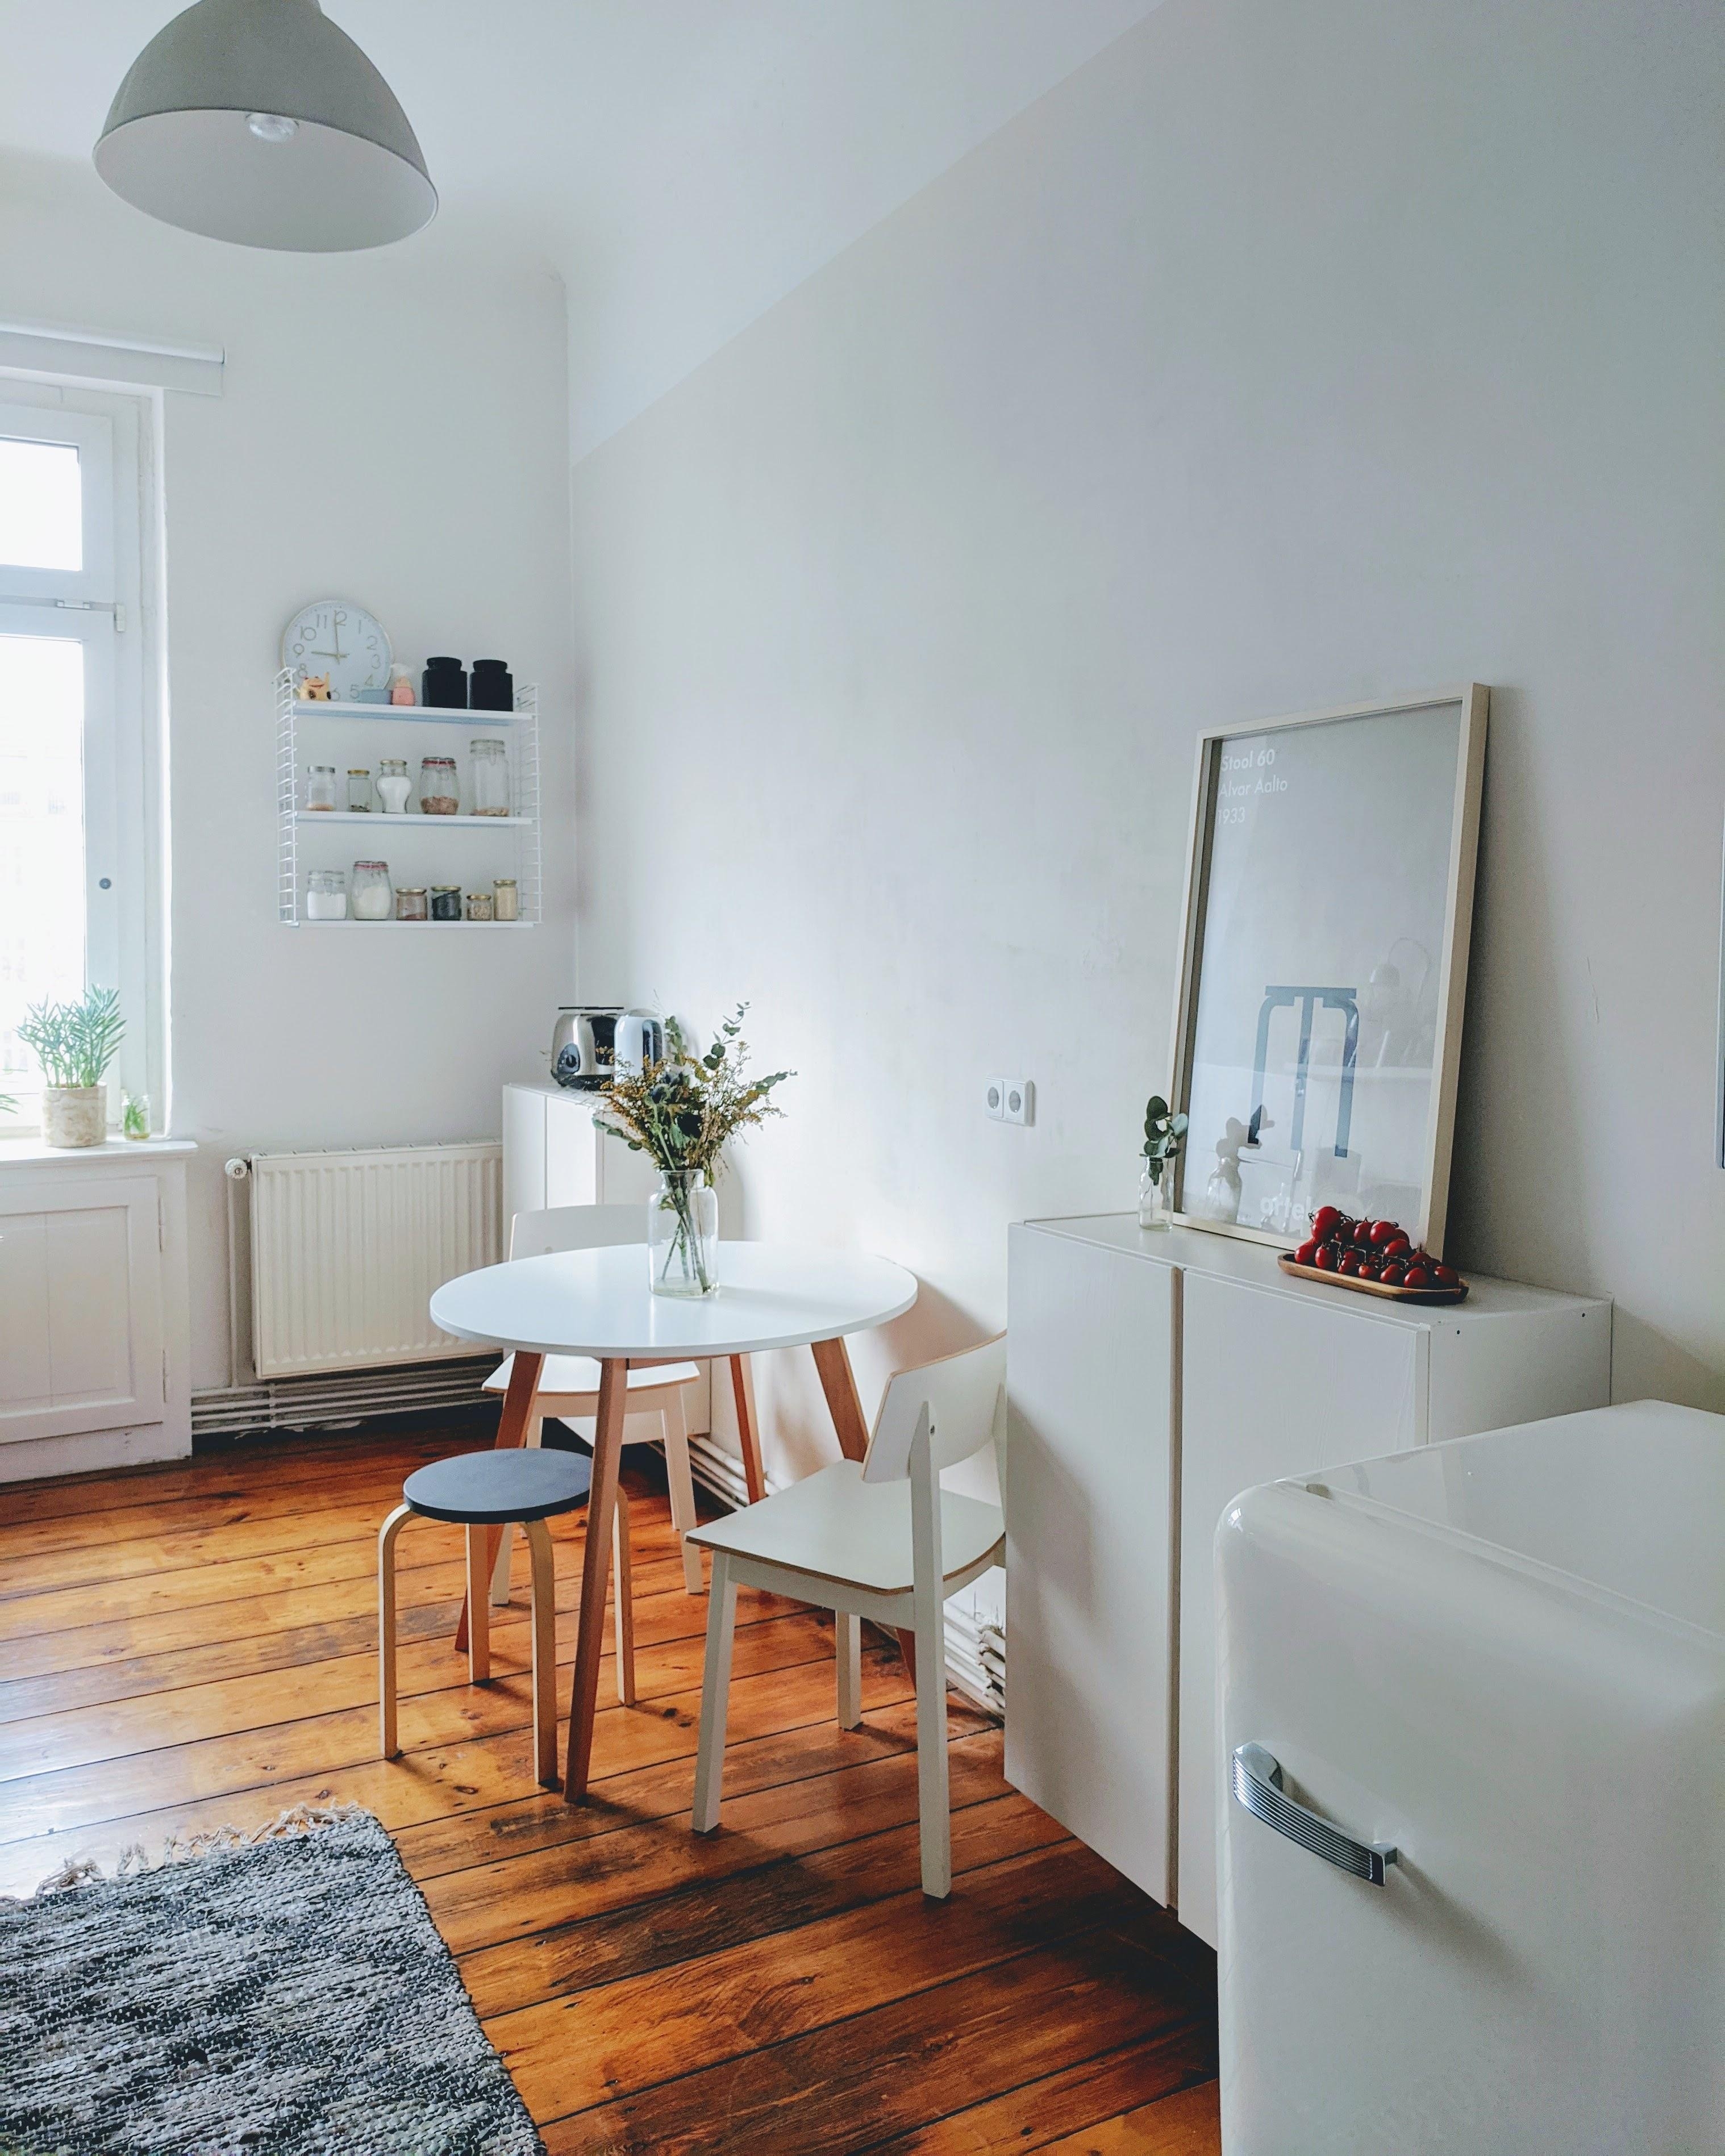 Fresh & Clean. #mykitchen #küche #zuhause #interior #skandistyle #scandiliving #clean 